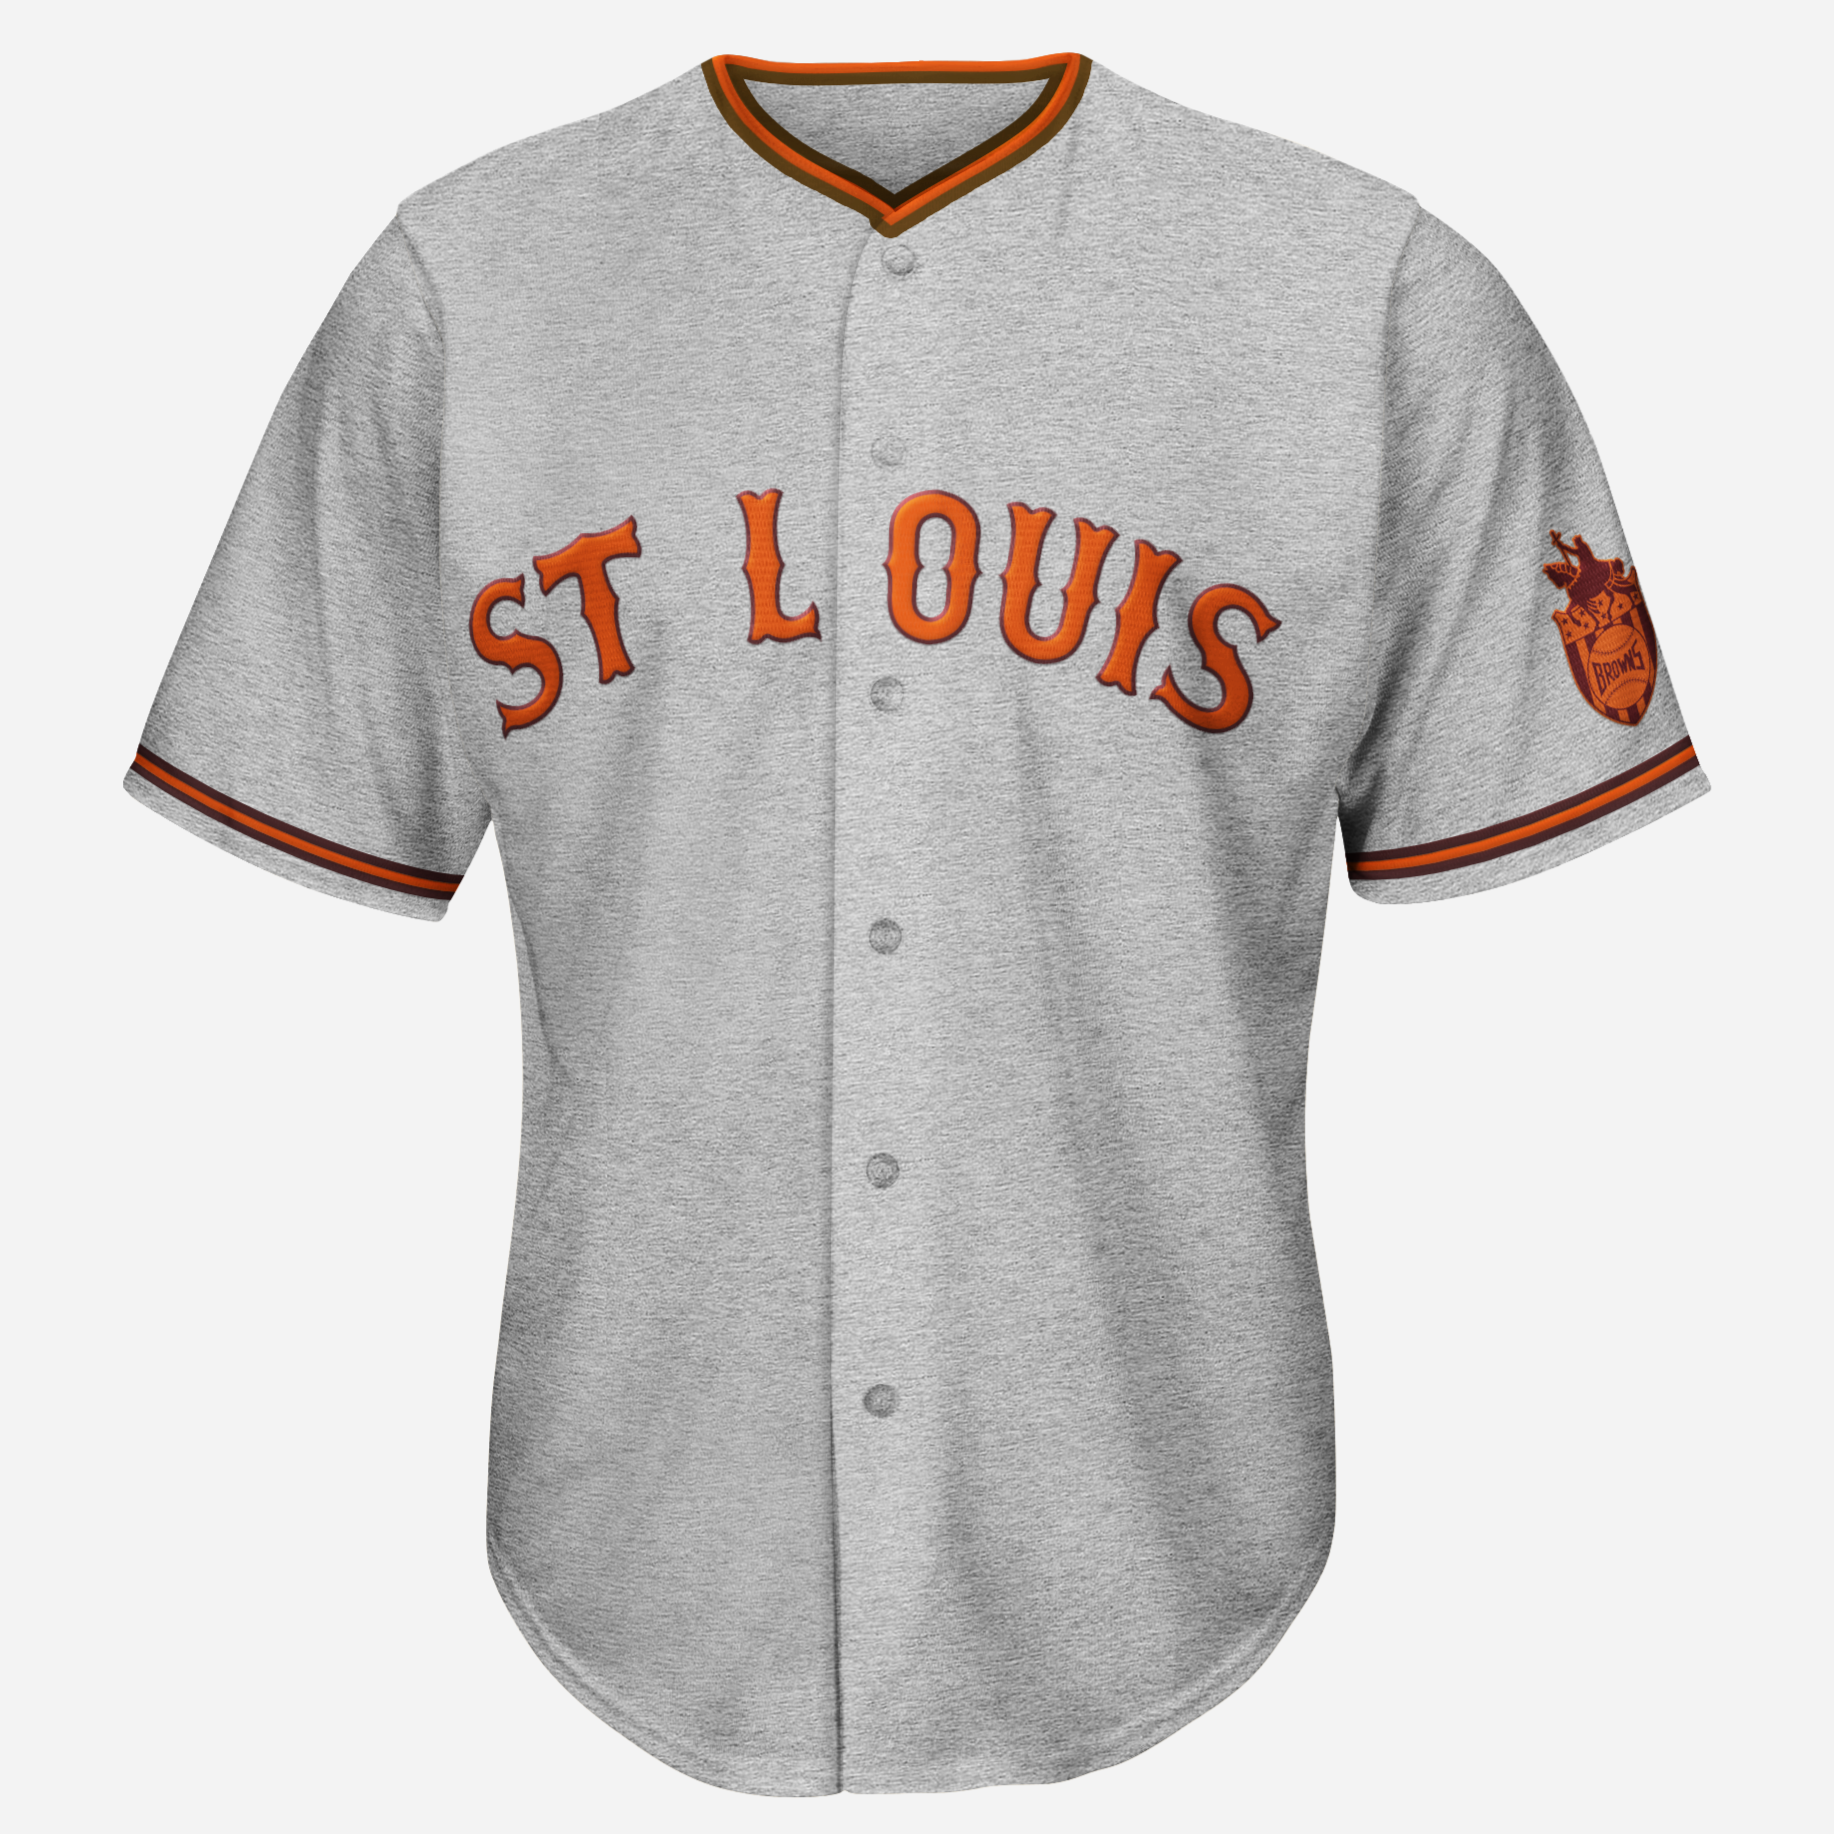 St. Louis Browns Fanclub: 1944 Browns Uniform for Sale